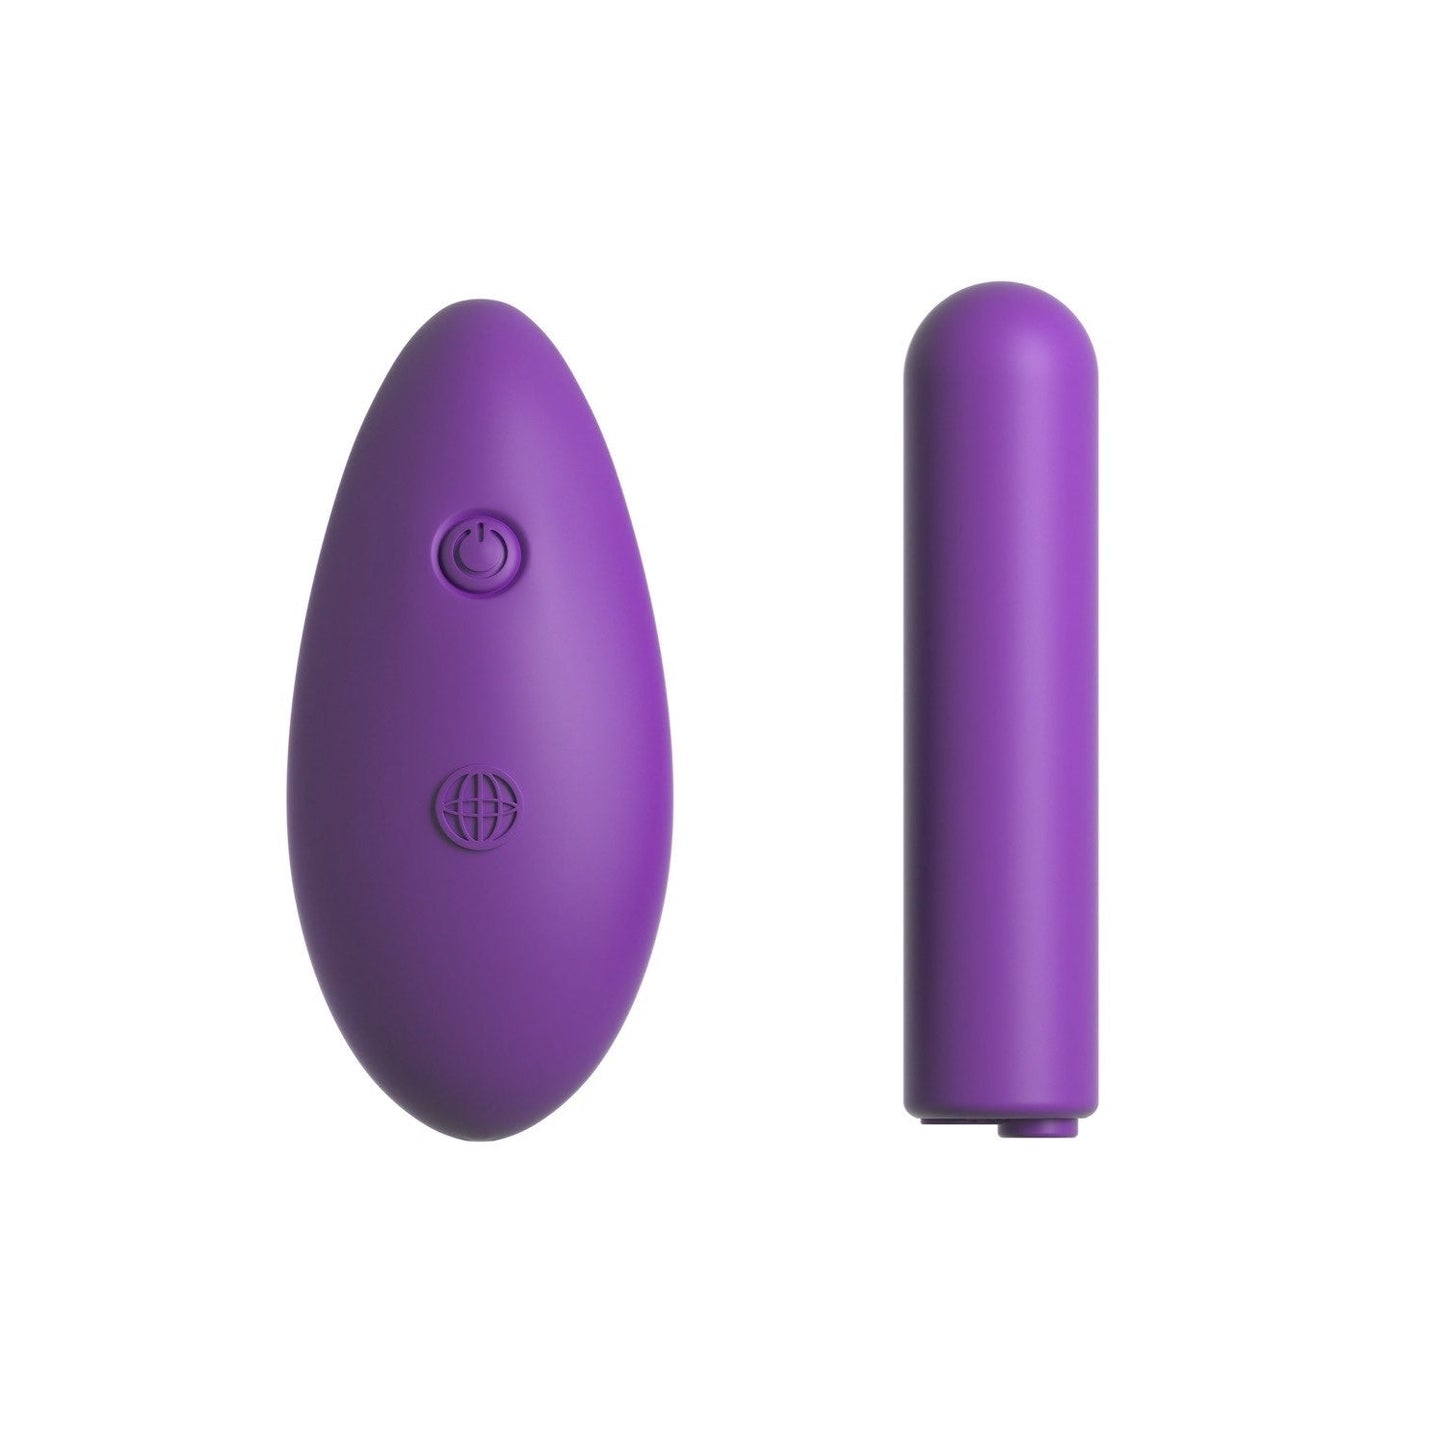 可充电遥控子弹头 - 紫色 USB 可充电子弹头带无线遥控